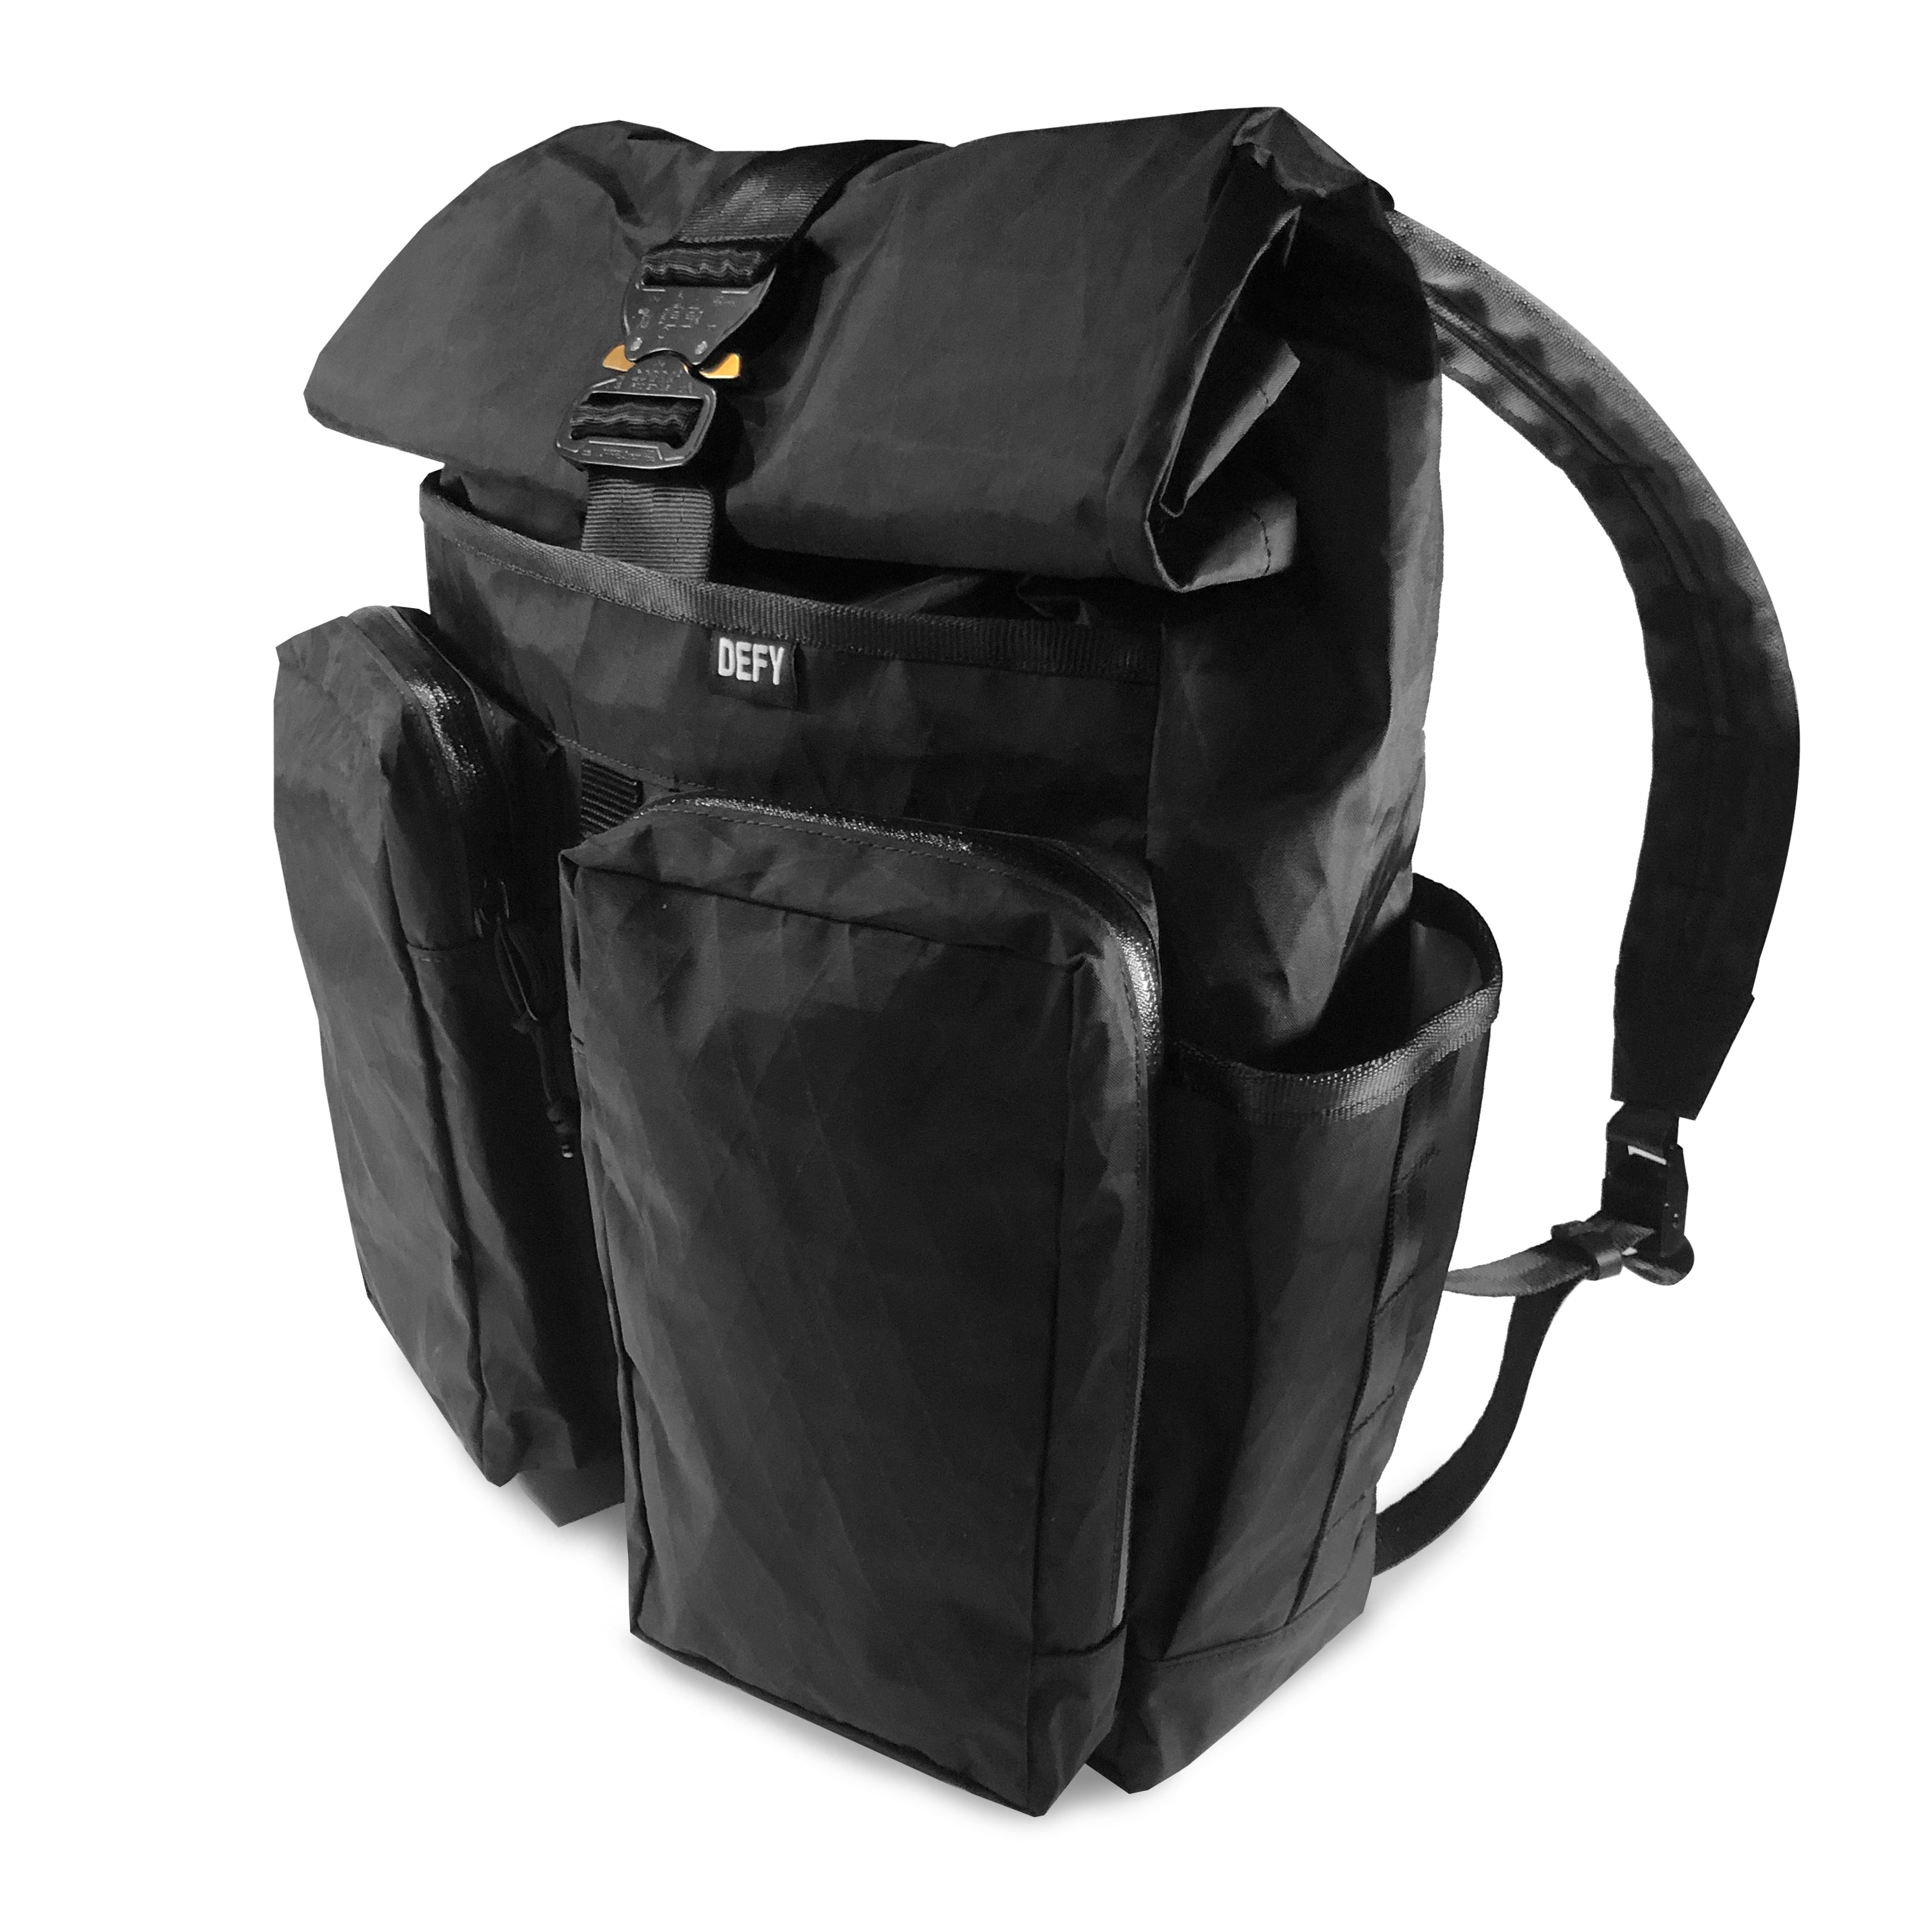 VerBockel 'Day Pack' Roll Top Backpack 2.0 | Black X-Pac – DEFY